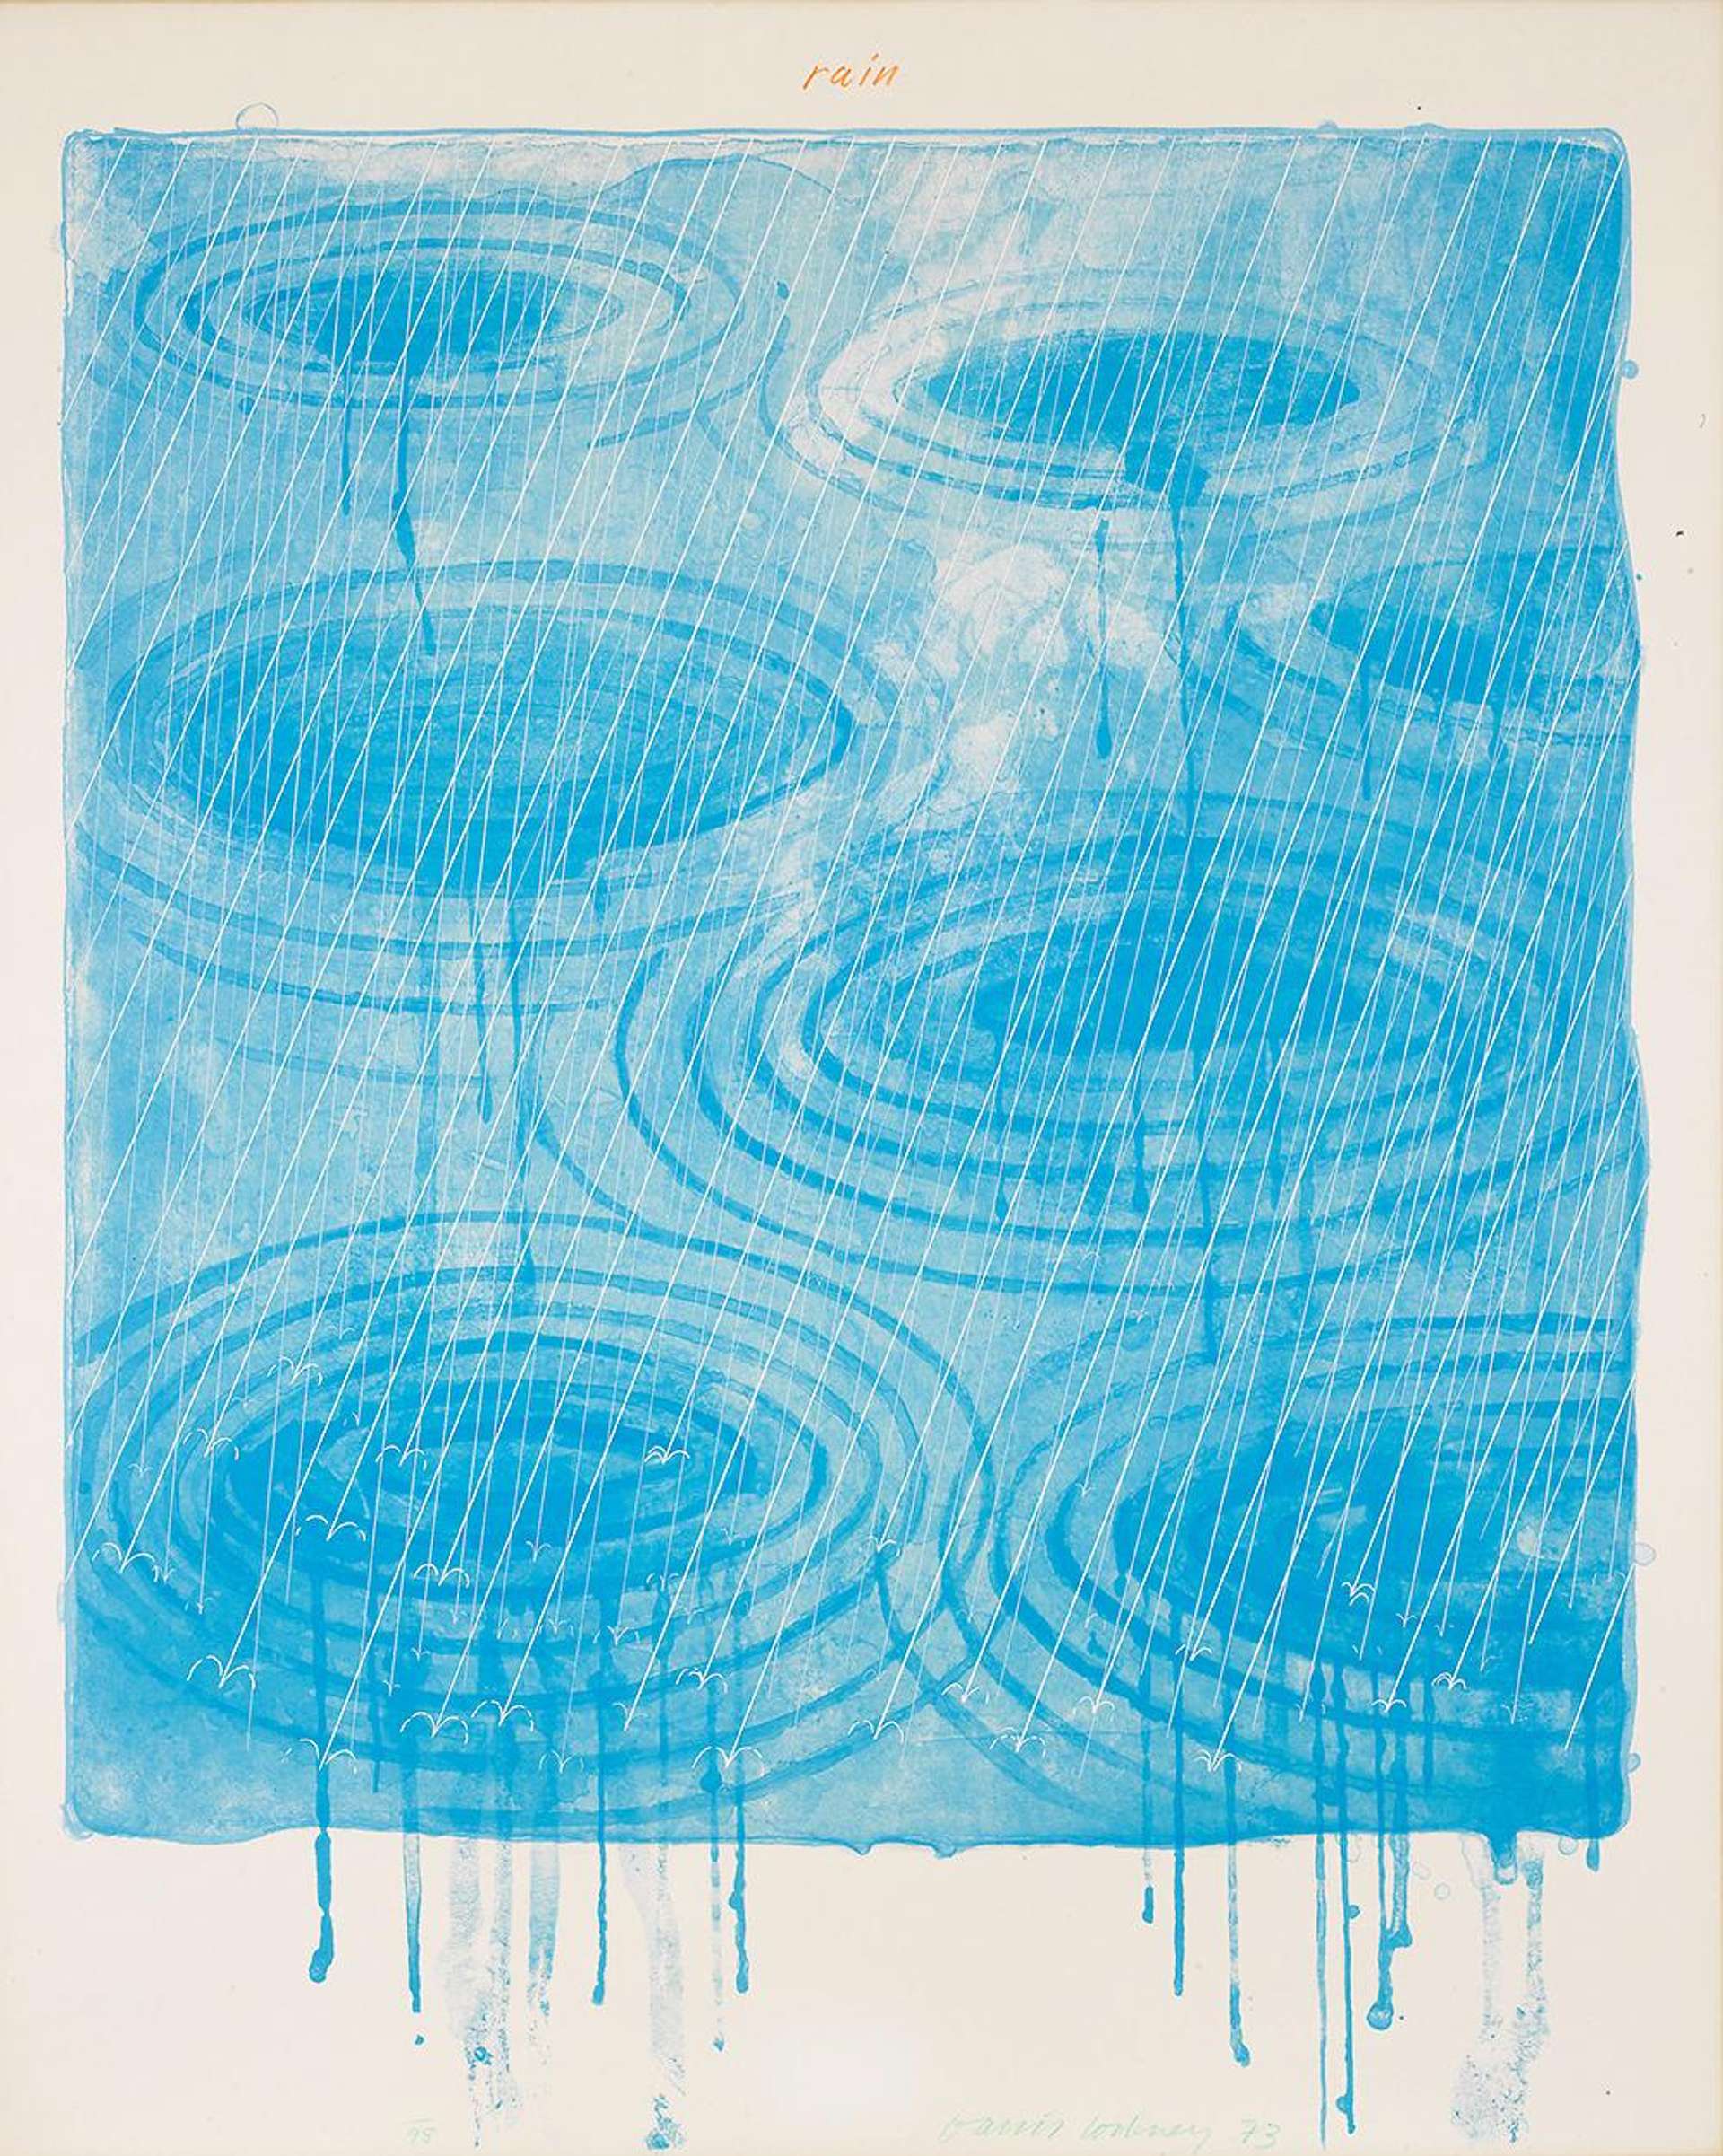 Rain by David Hockney - MyArtBroker 